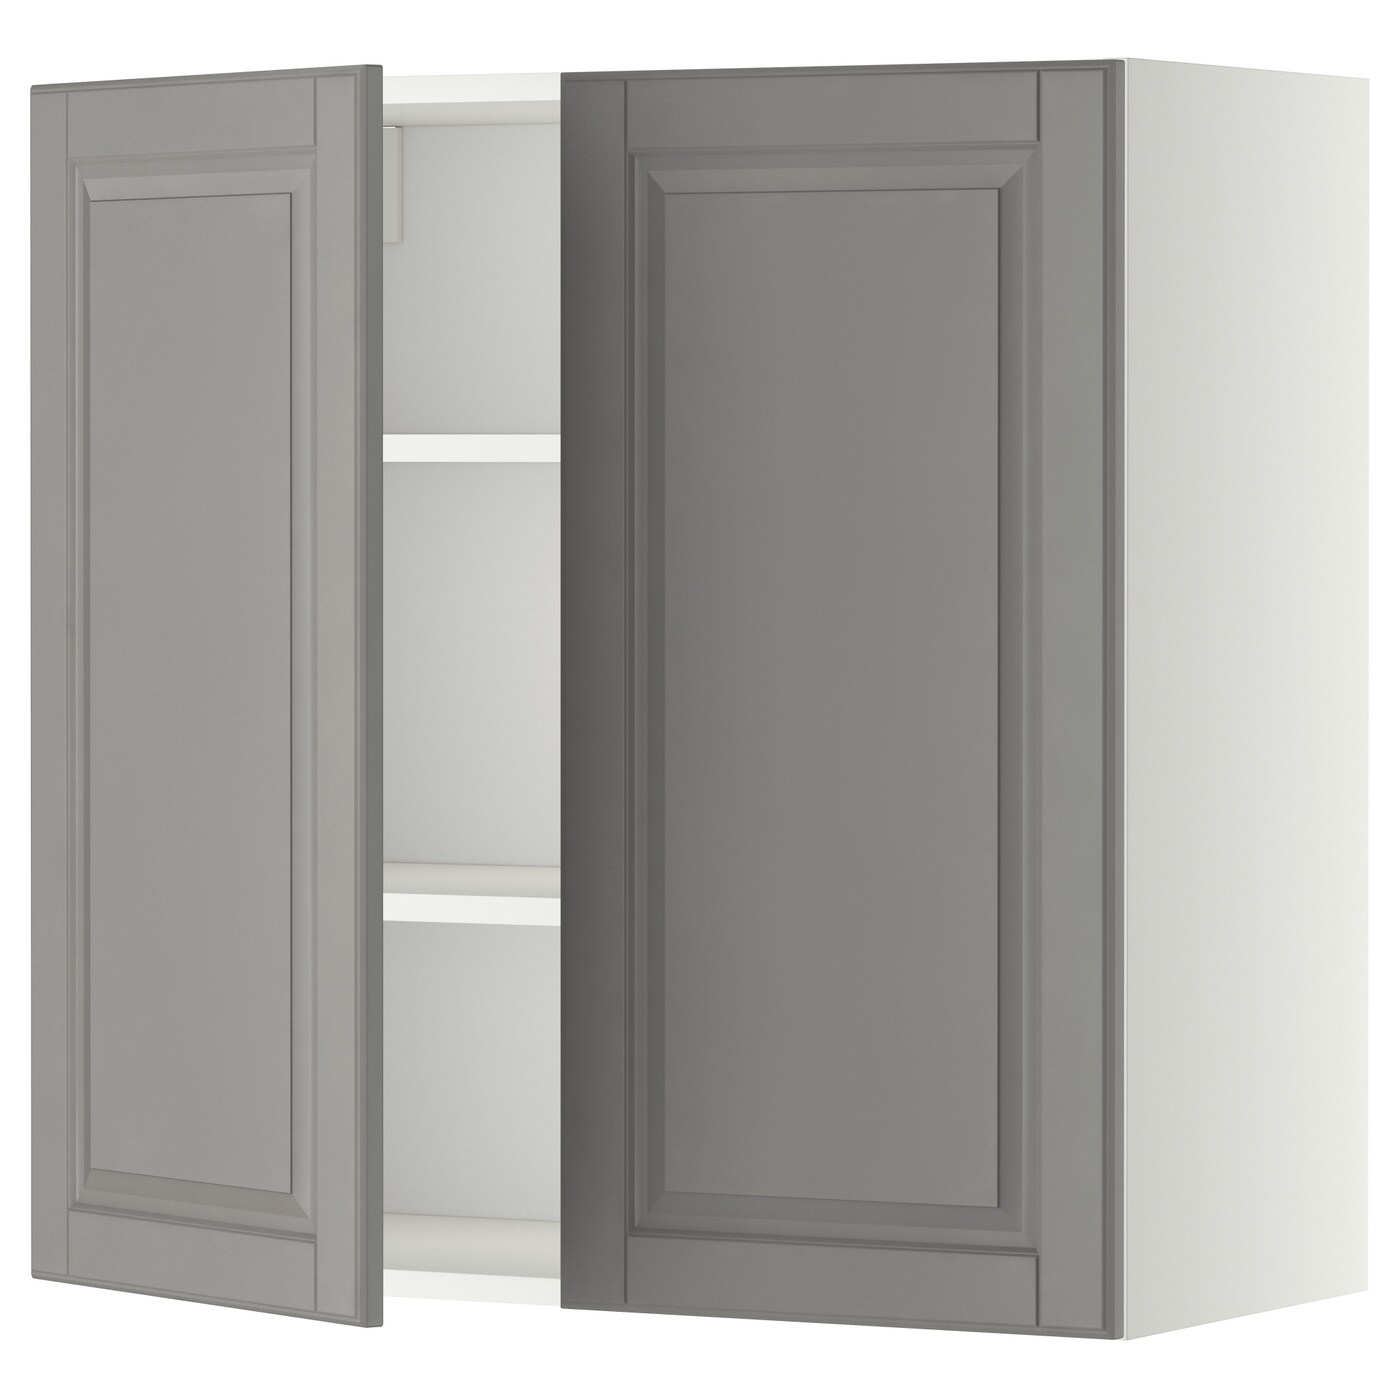 Навесной шкаф с полкой - METOD IKEA/ МЕТОД ИКЕА, 80х80 см, белый/серый